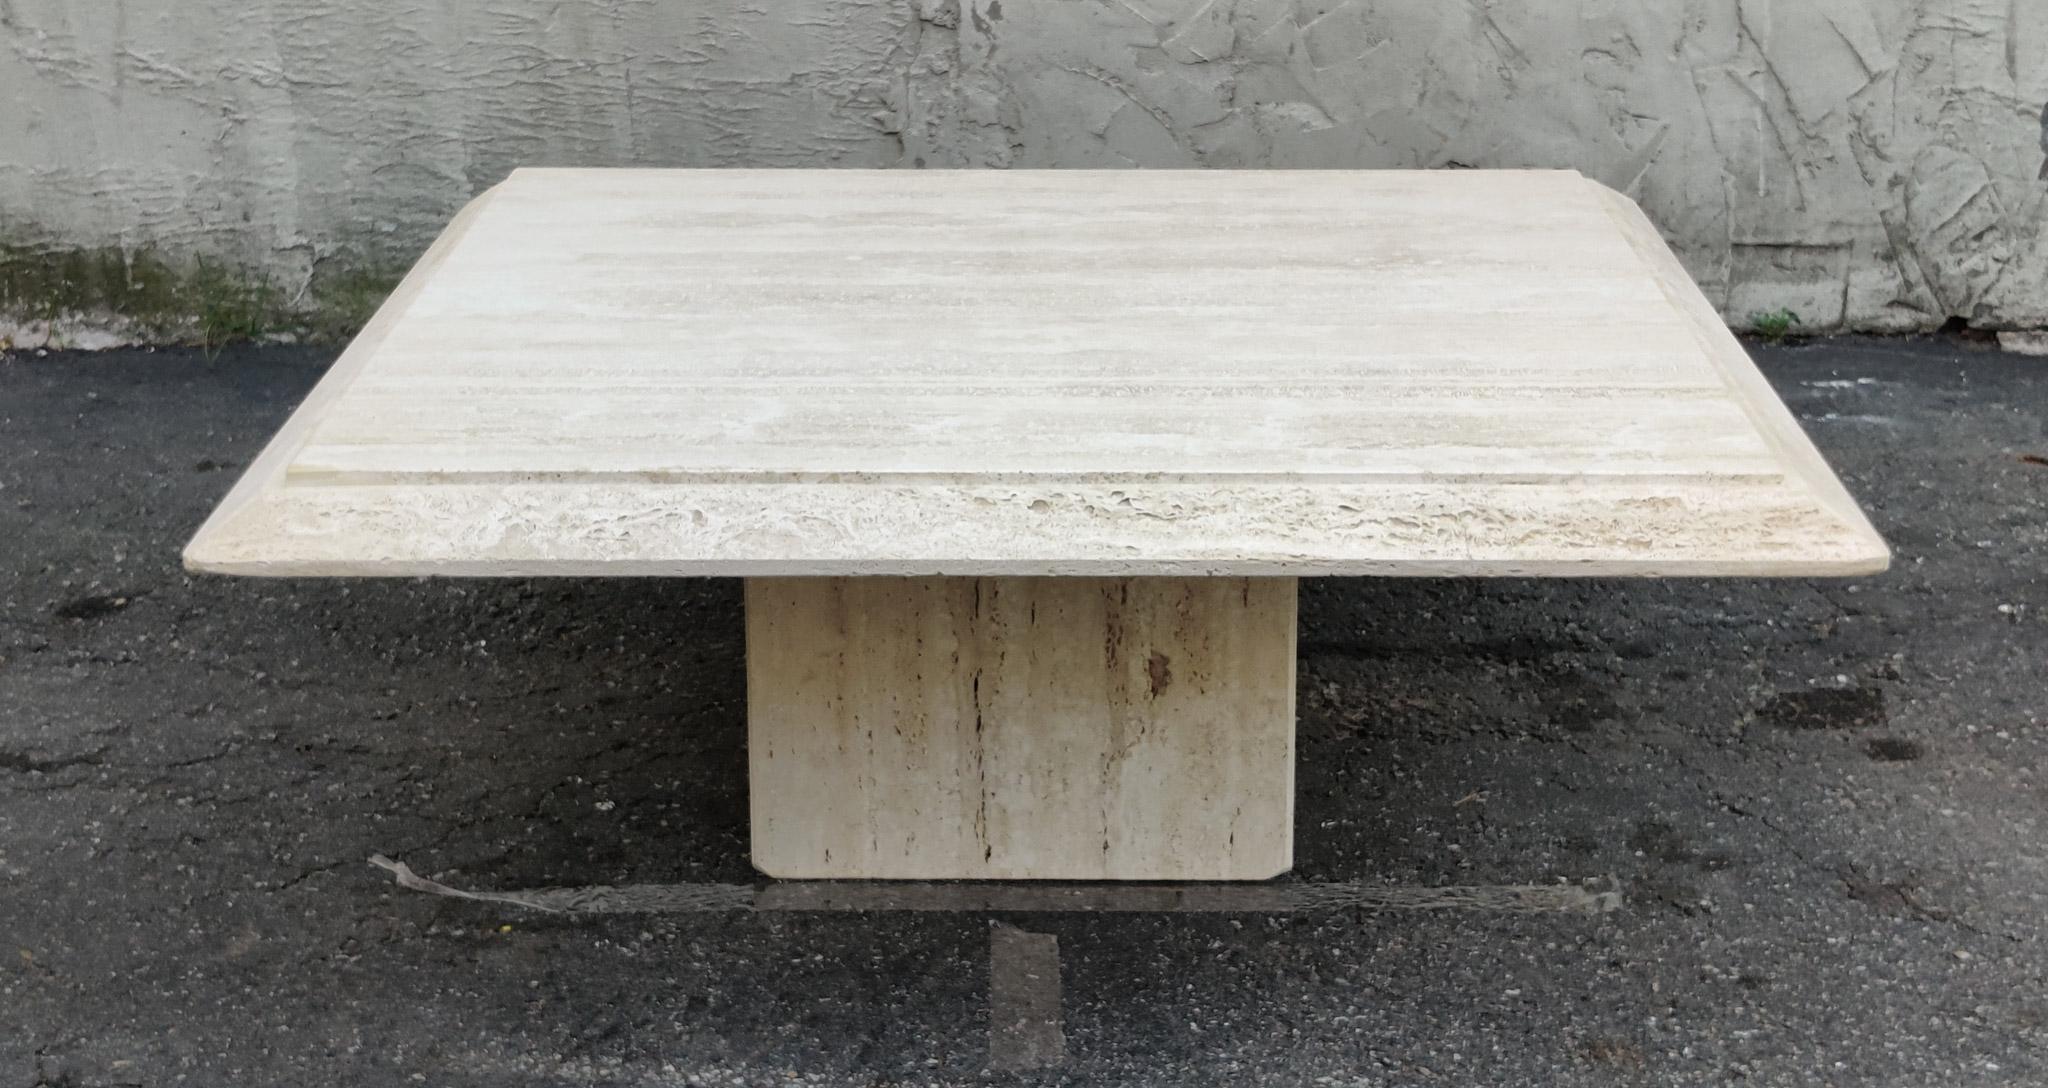 Une étonnante table basse italienne avec des bordures en travertin naturel et poreux. La simplicité du design et des traitements de surface est ce qui fait de cette table un exemple classique de design minimaliste italien fort et stoïque, utilisant